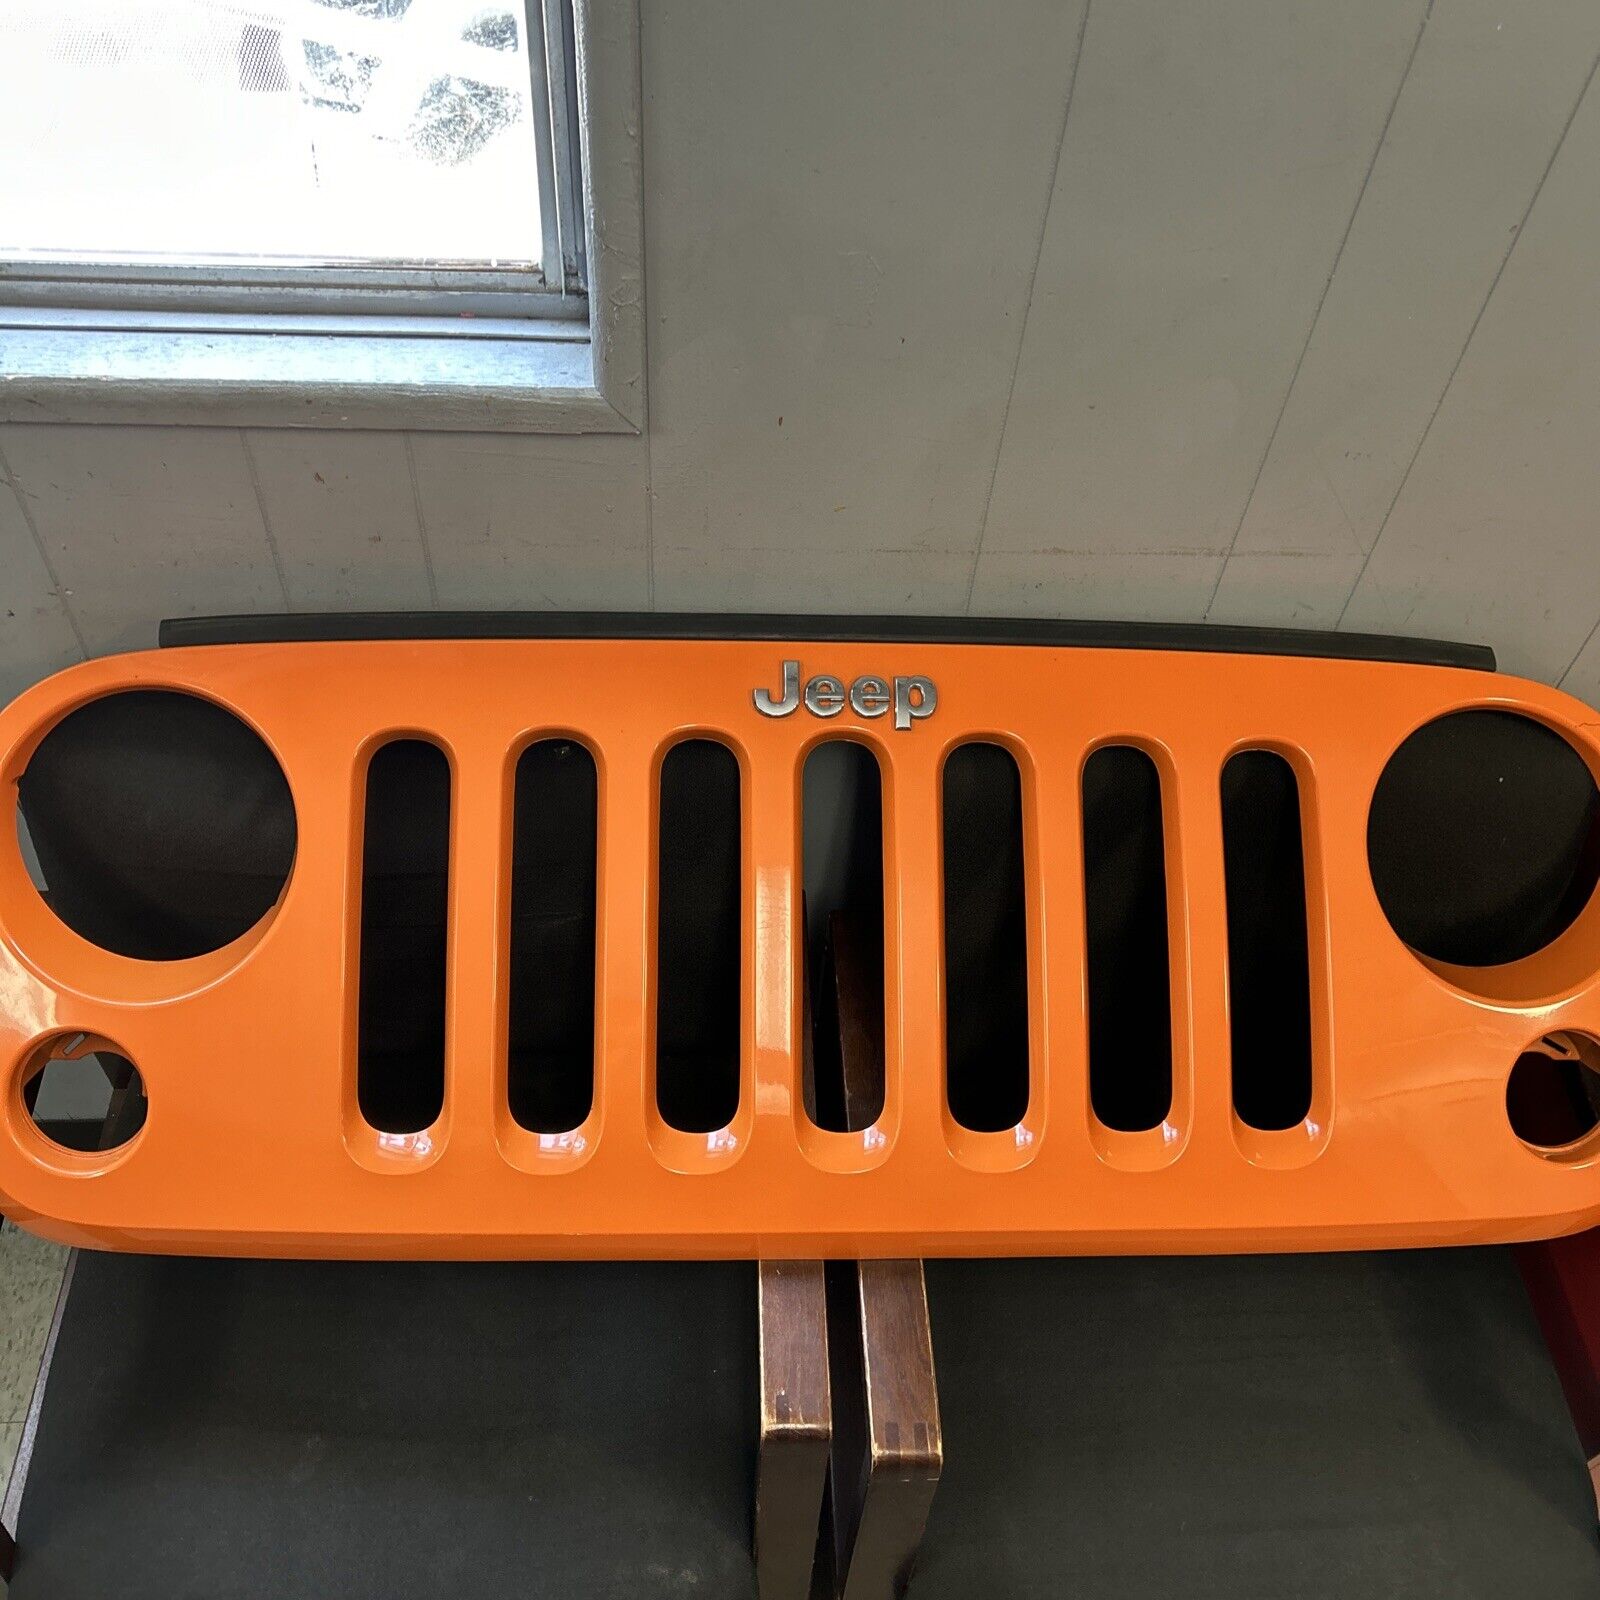 2007-2017 Jeep JK Wrangler OEM Factory Front Grille Orange Color